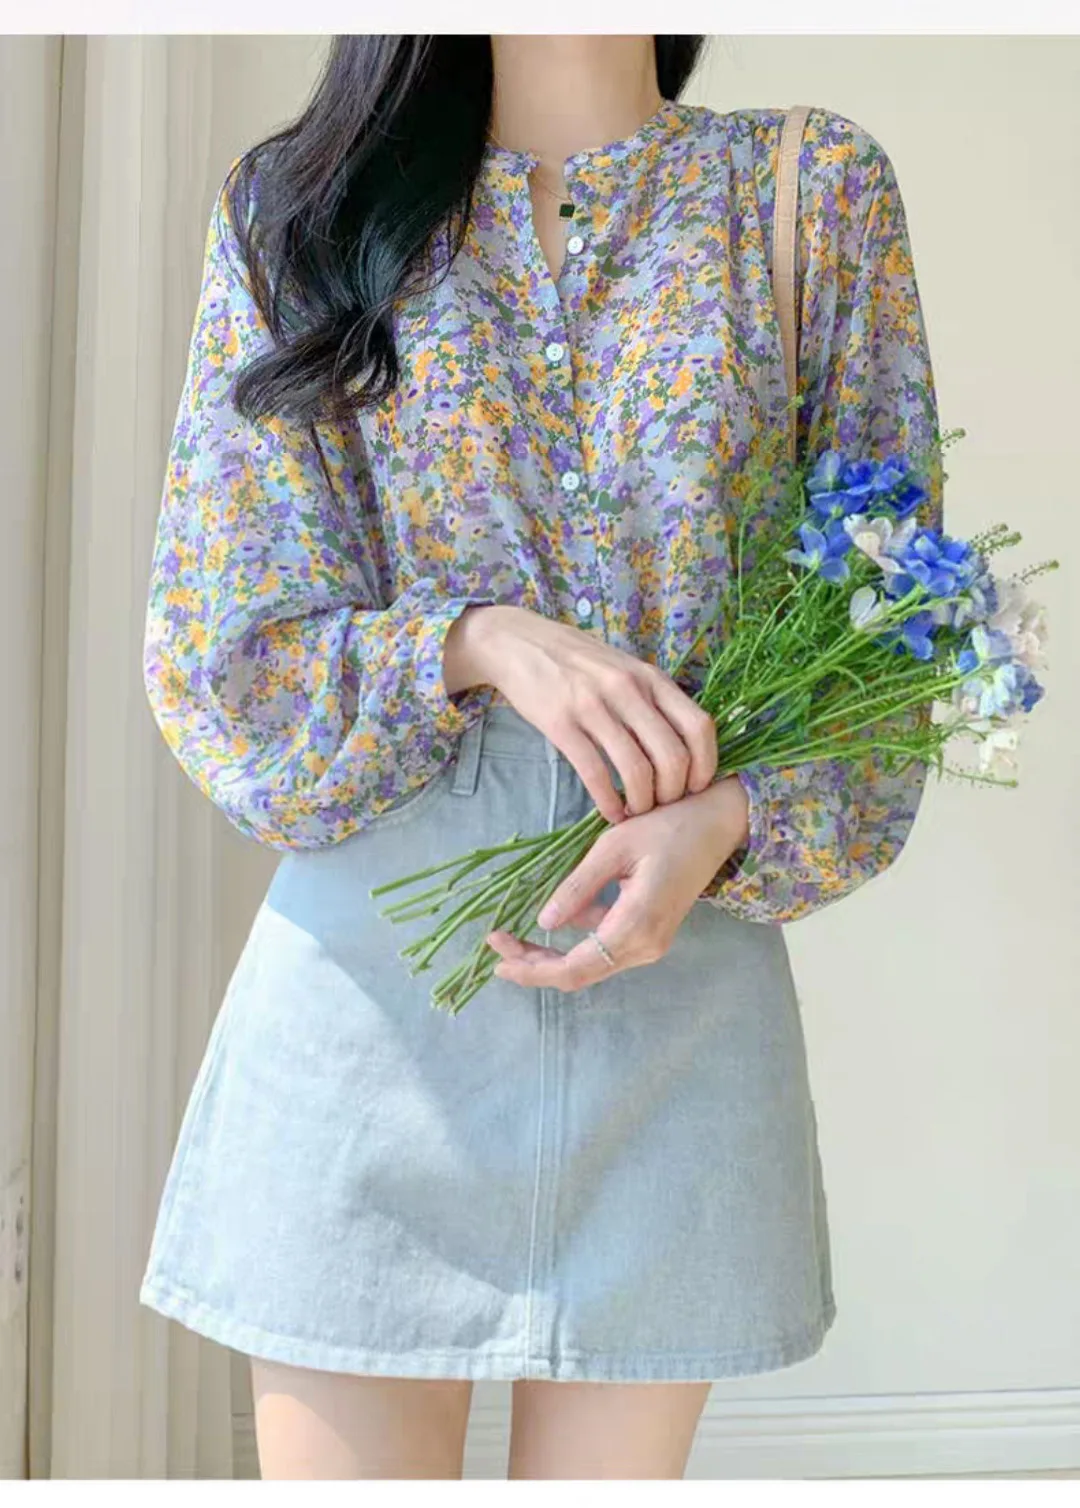 Floral chiffon 2021 summer new shirt short-sleeved fashion girly shirt blouses Tops